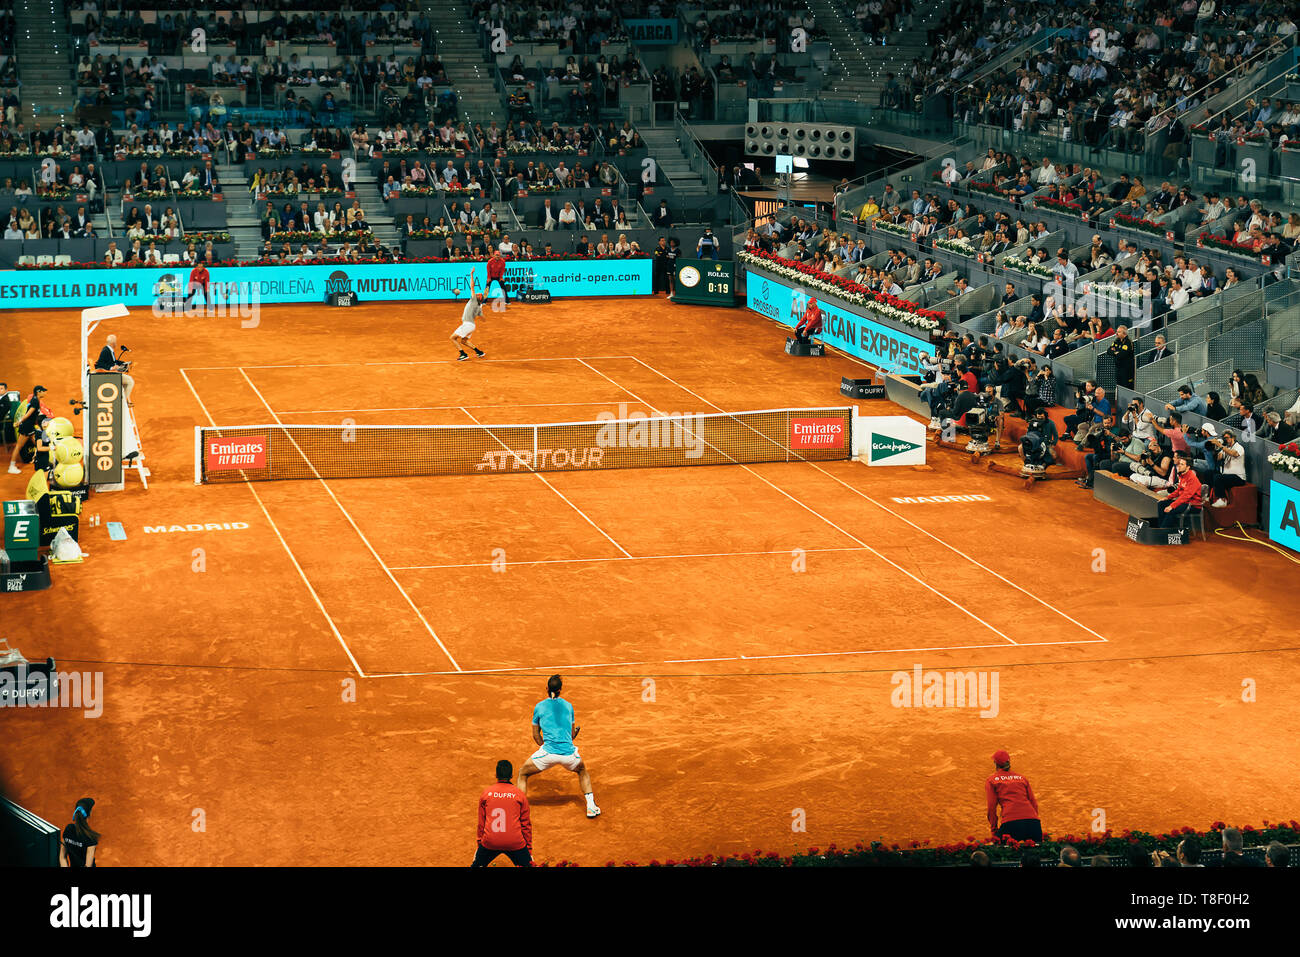 Madrid, Spagna; 11 maggio 2019: La Caja Magica tennis center durante il 2019 Mutua Madrid Open ATP obbligatorio Premier torneo di tennis, semifinali uomini Raf Foto Stock